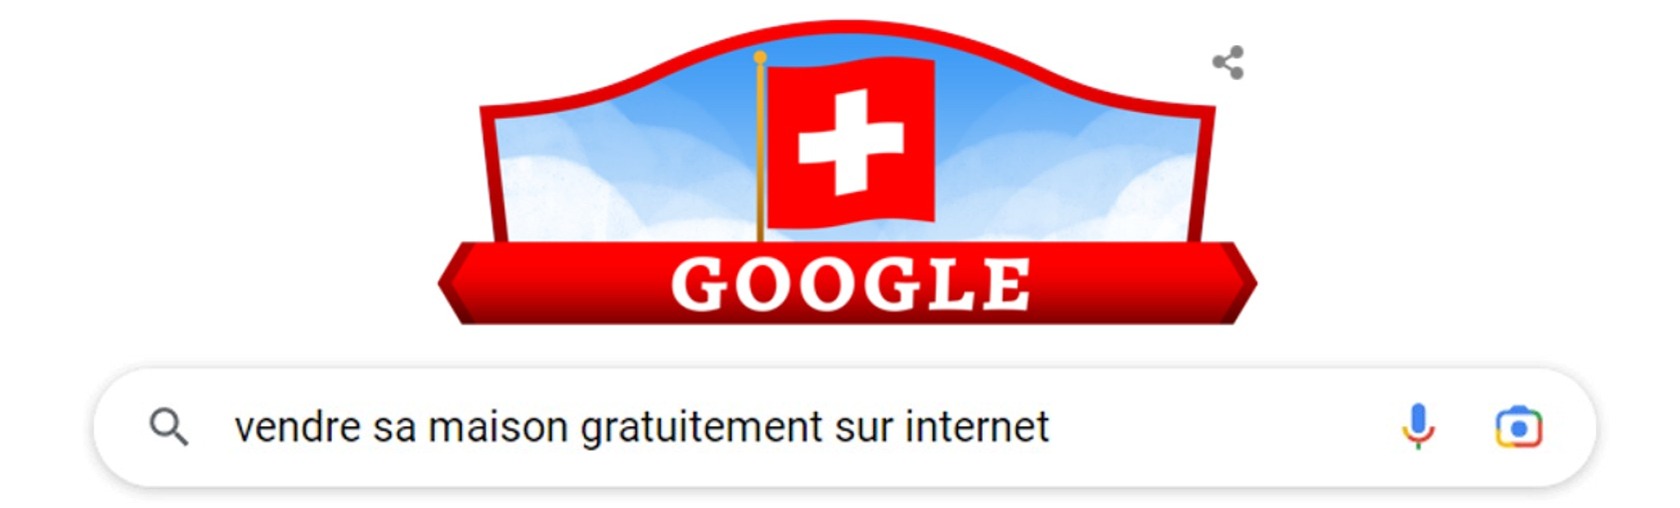 comment vendre sa maison gratuitement sur internet suisse